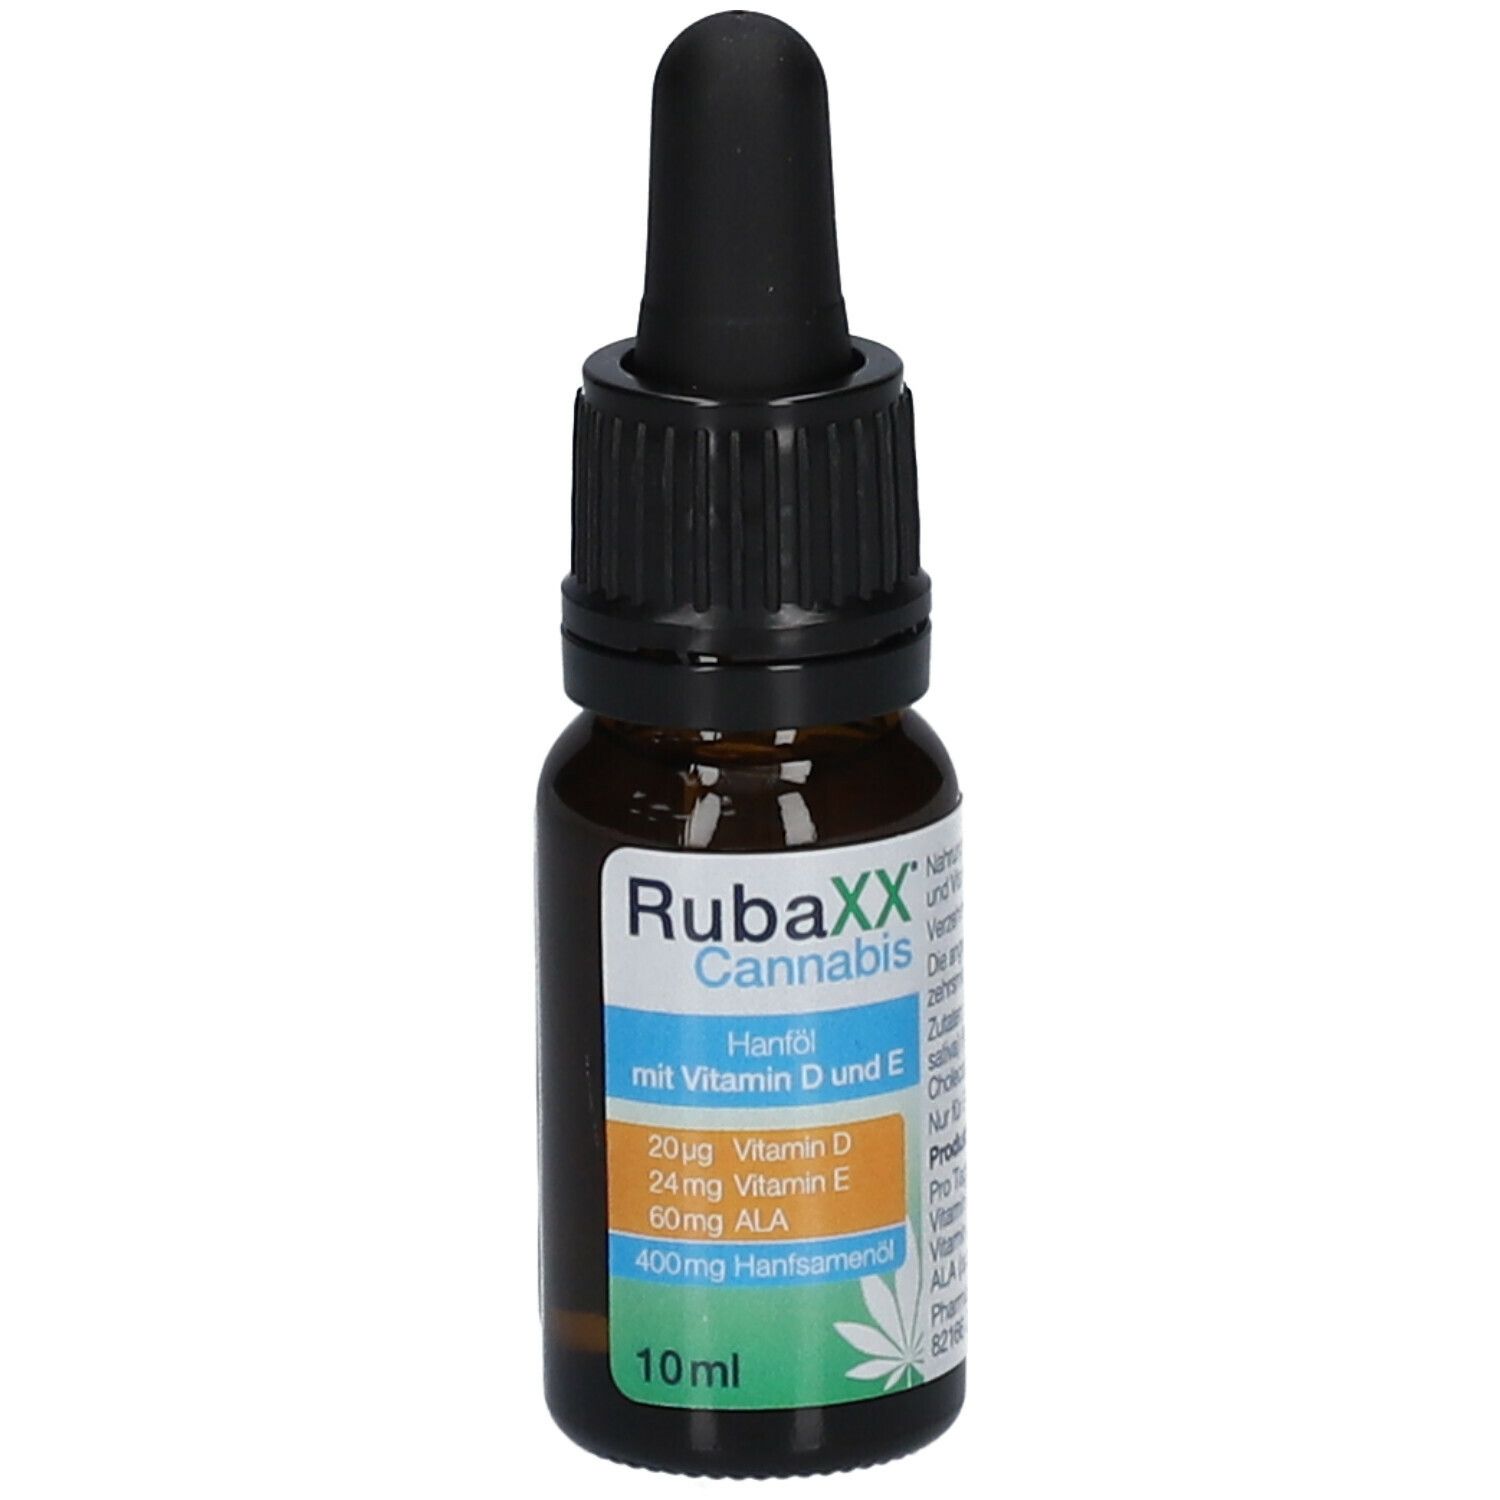 Rubaxx® cannabis oil